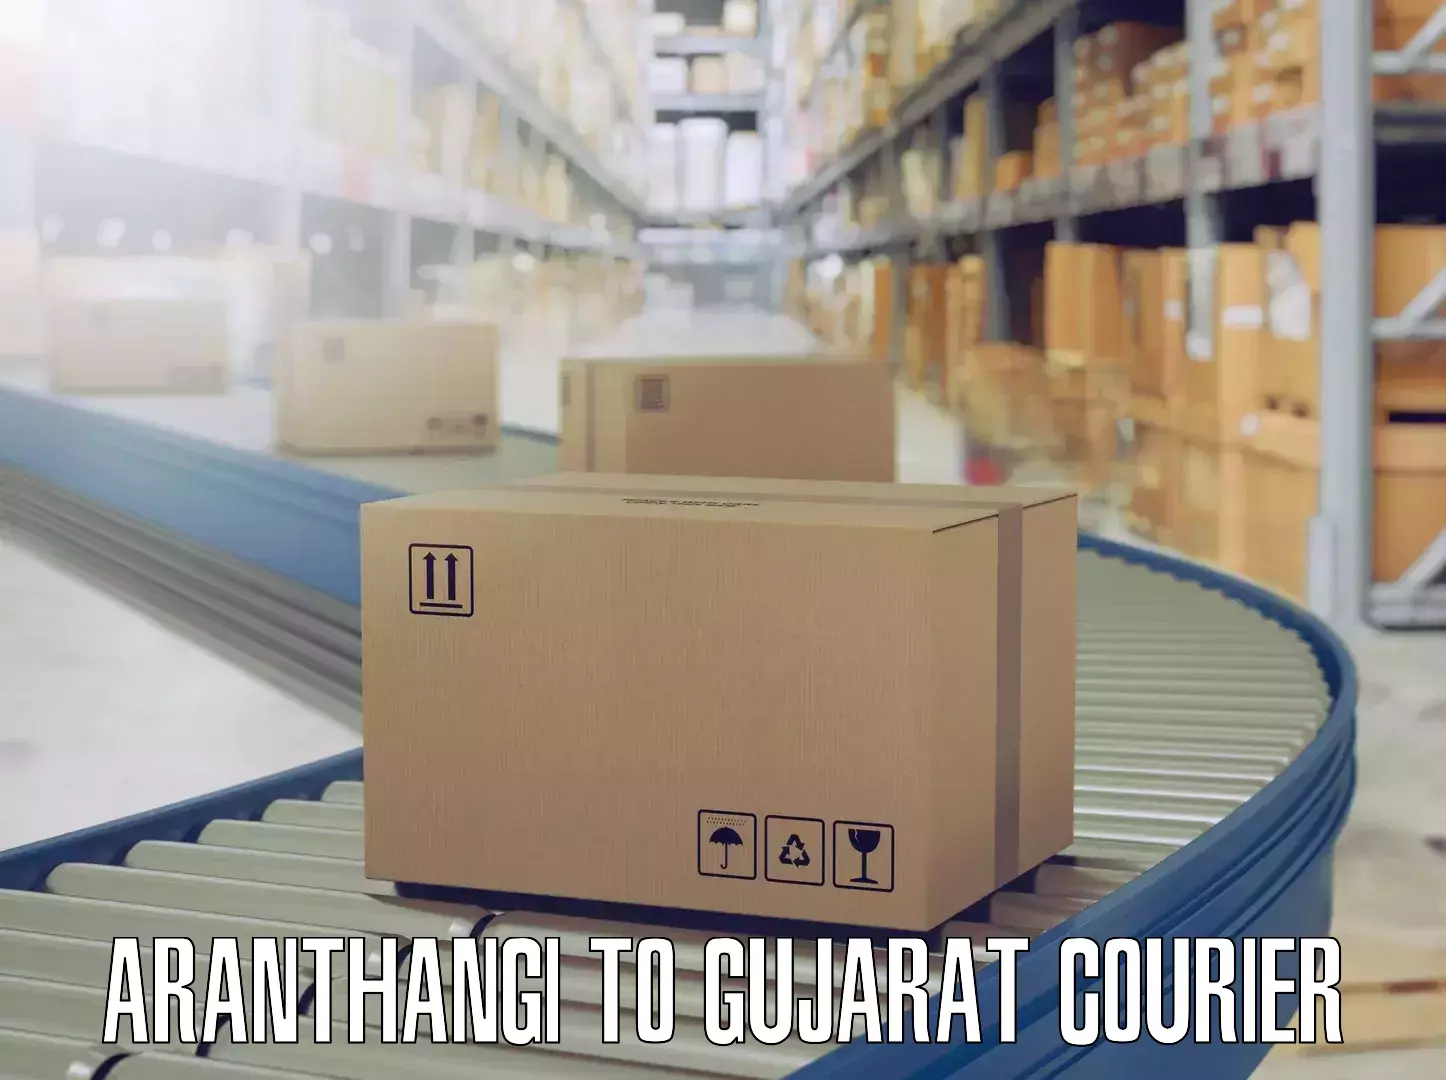 Skilled furniture movers Aranthangi to Gujarat